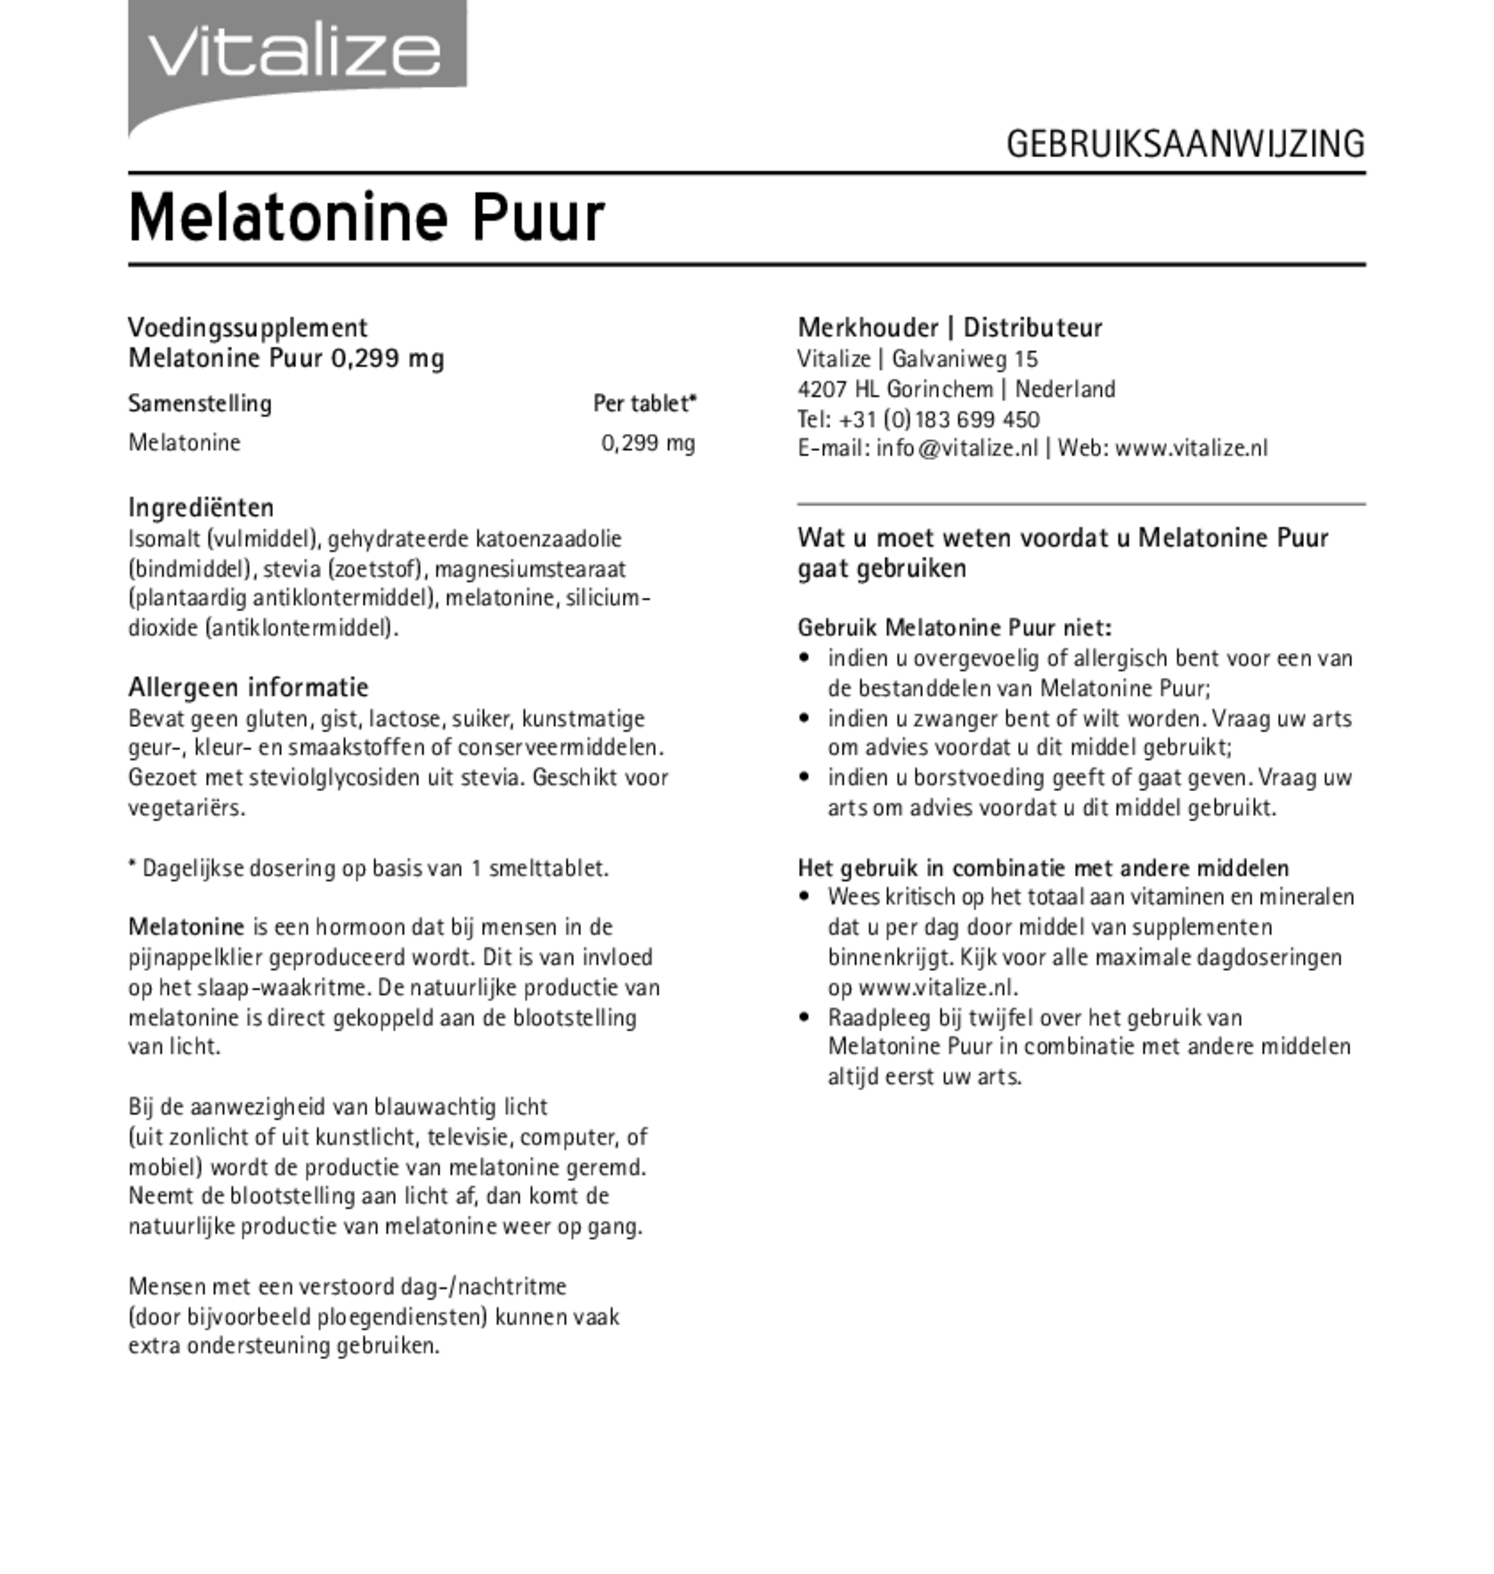 Melatonine Puur 0,299 mg Tabletten afbeelding van document #1, gebruiksaanwijzing